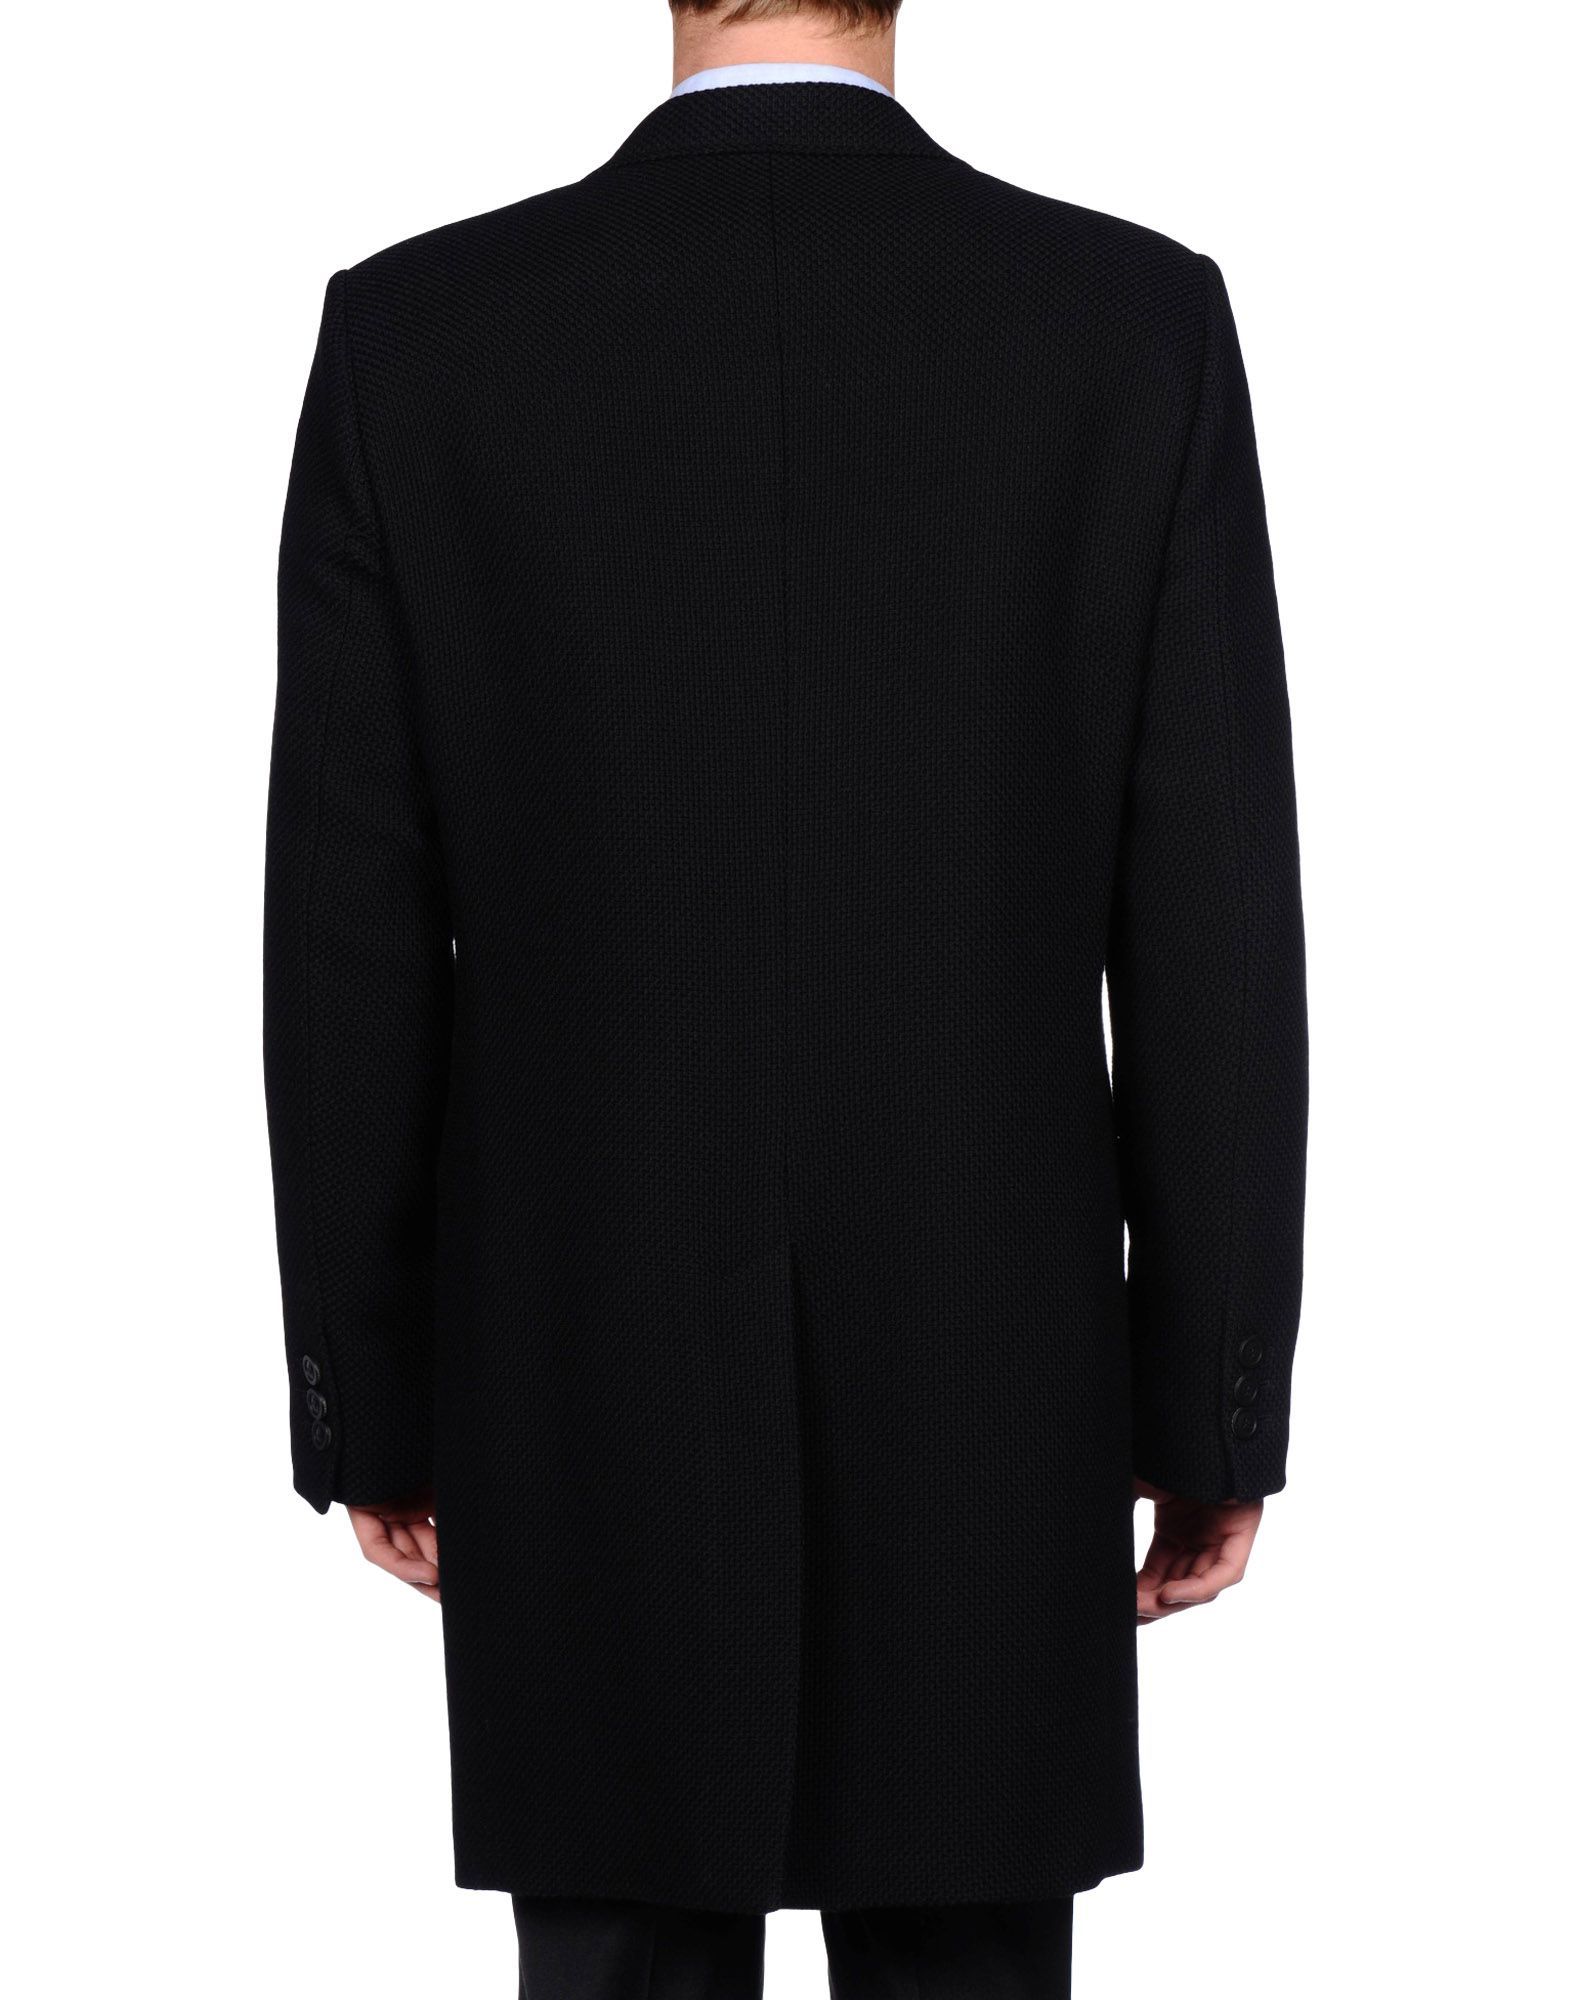 Lyst - Emporio Armani Coat in Black for Men